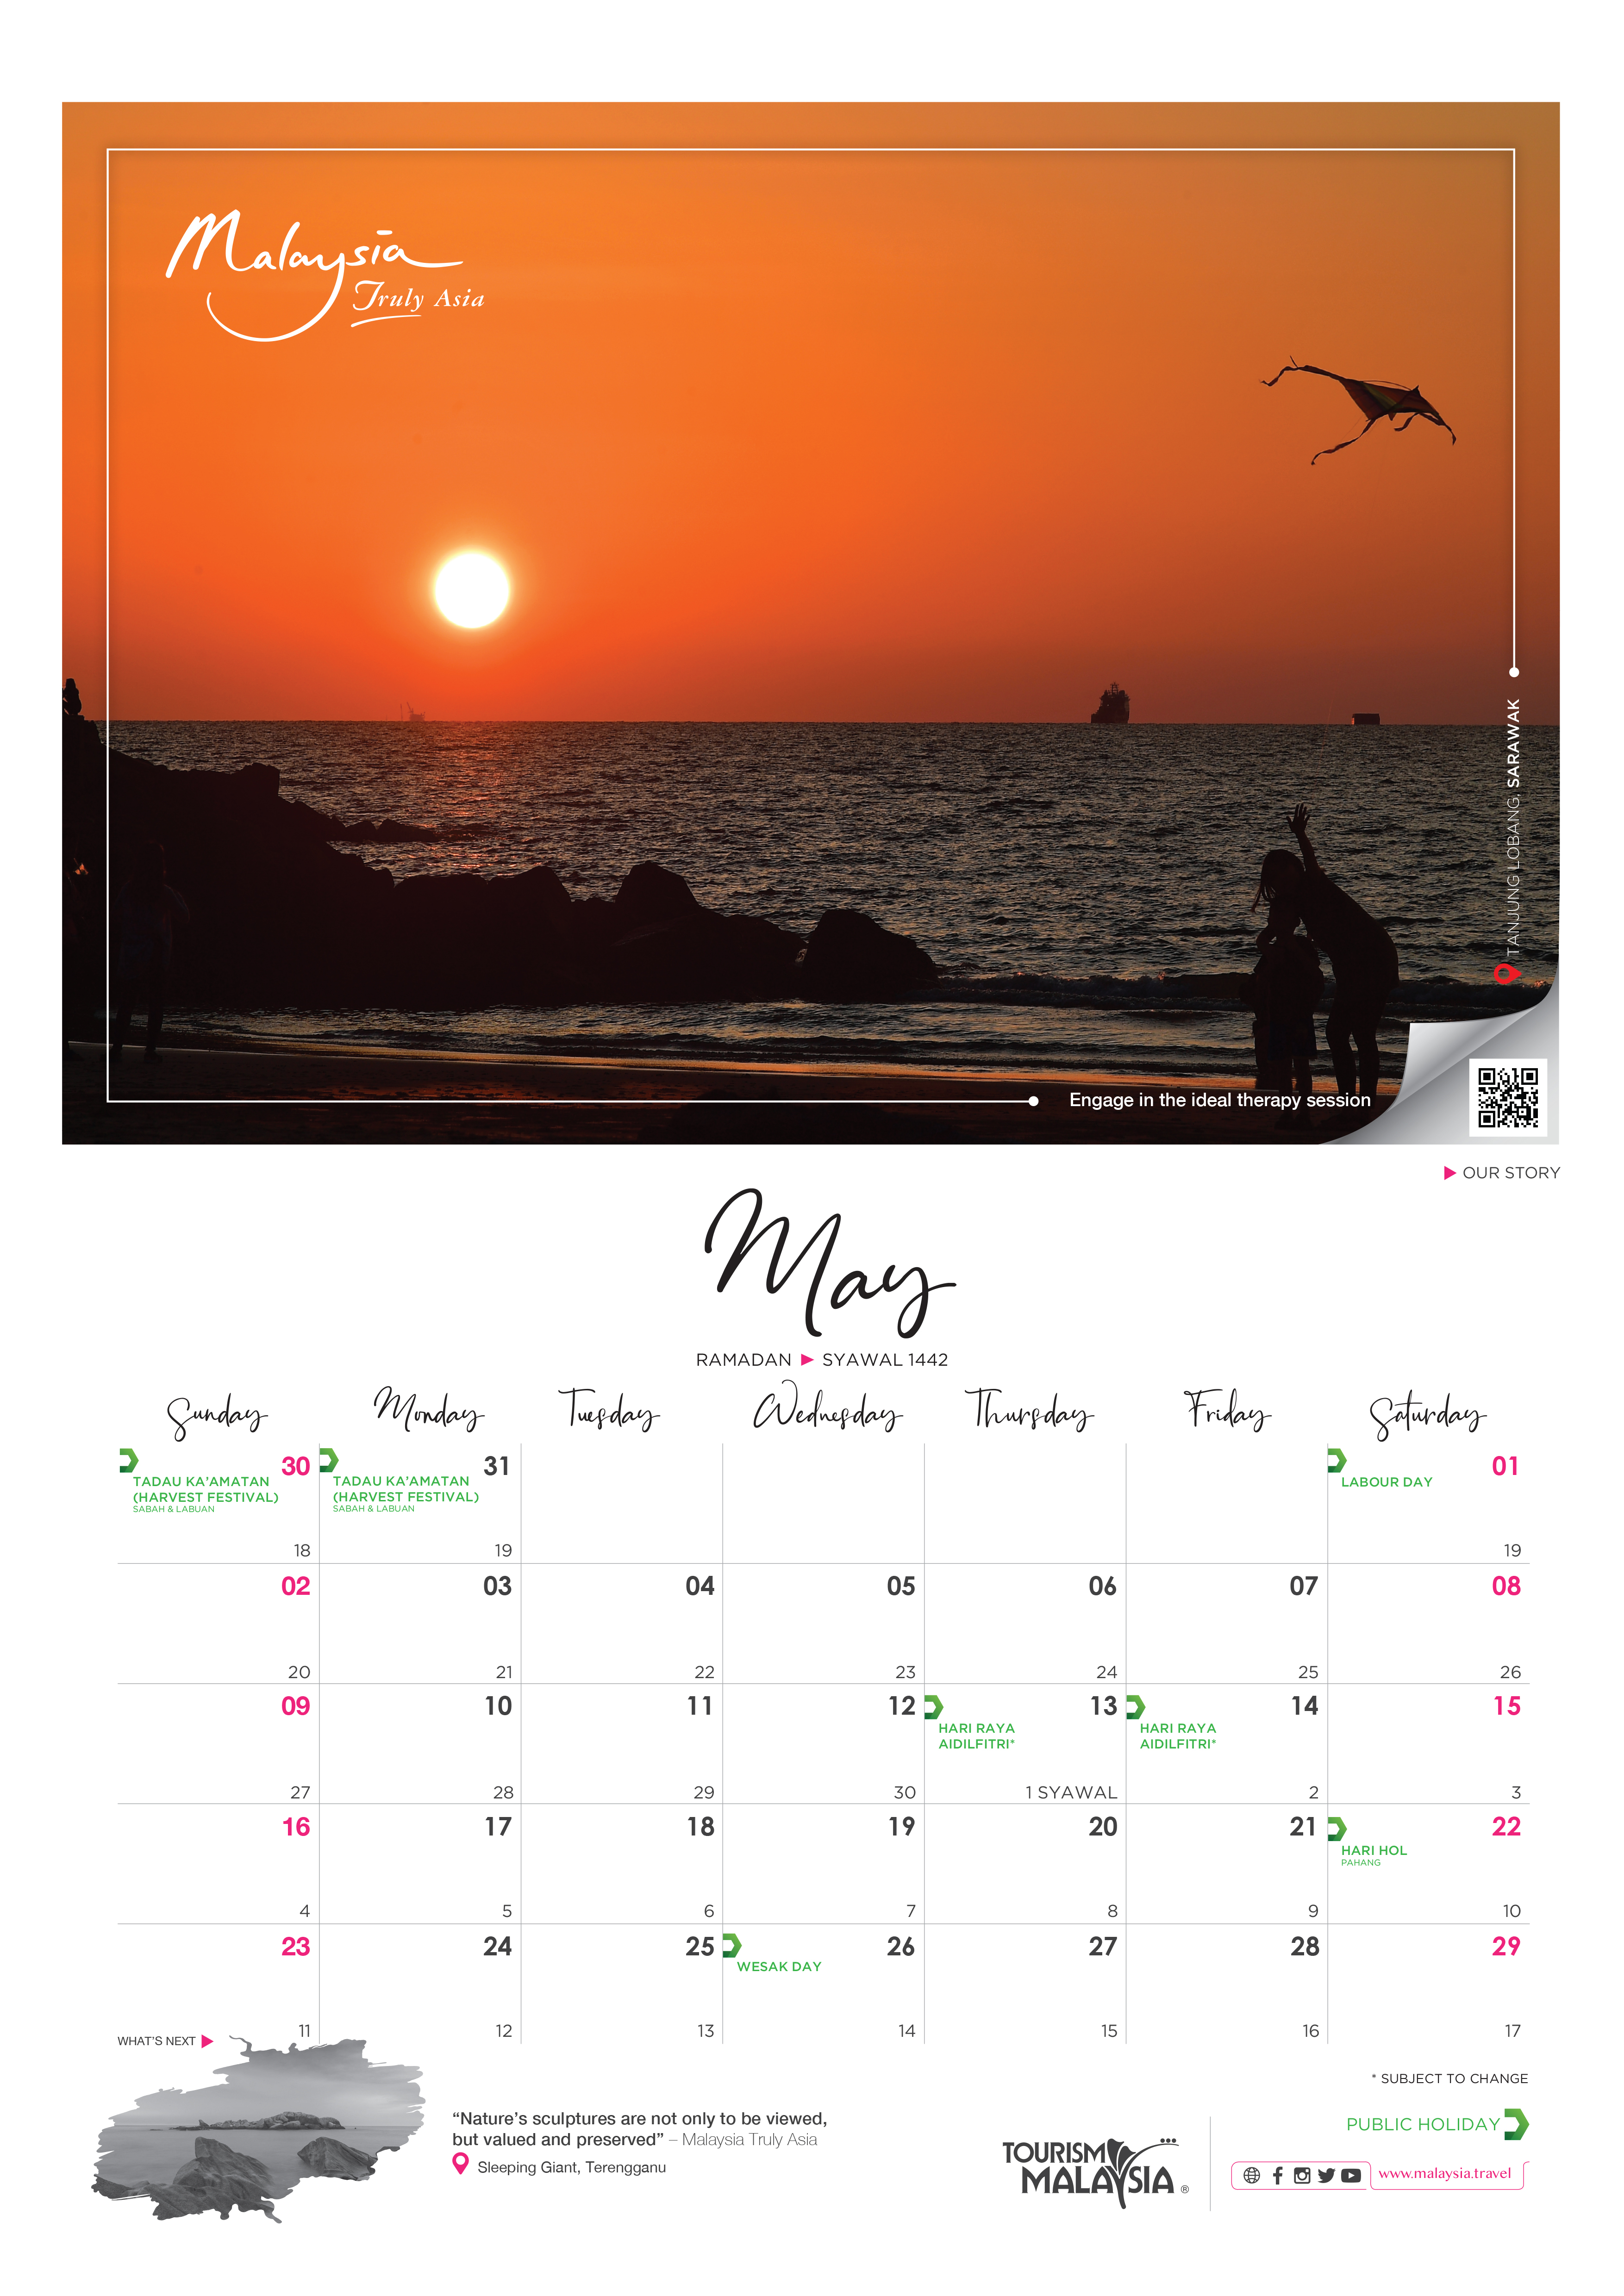 Calendar syawal 2021